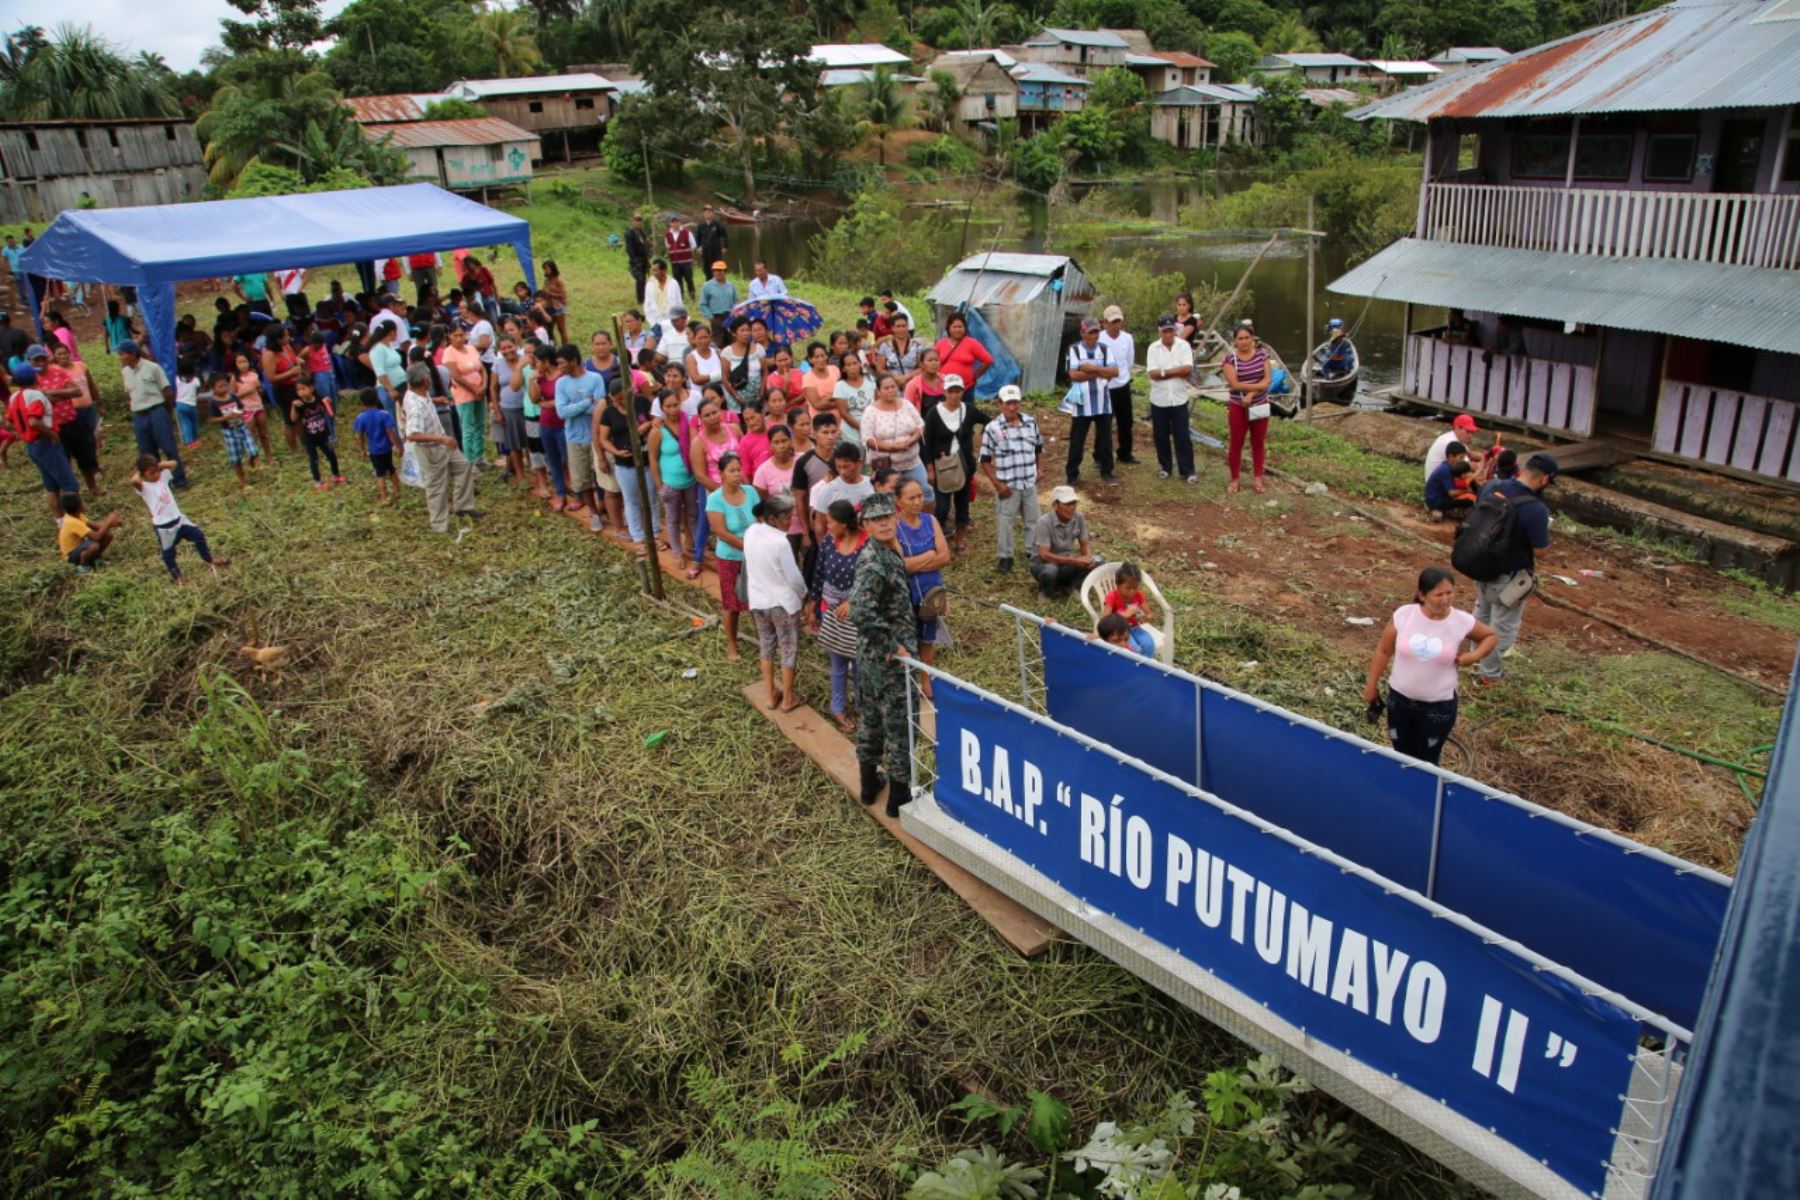 La PIAS Putumayo II brindó más de mil atenciones a bordo en la comunidad de Huanta, distrito de Pebas, en la región Loreto.